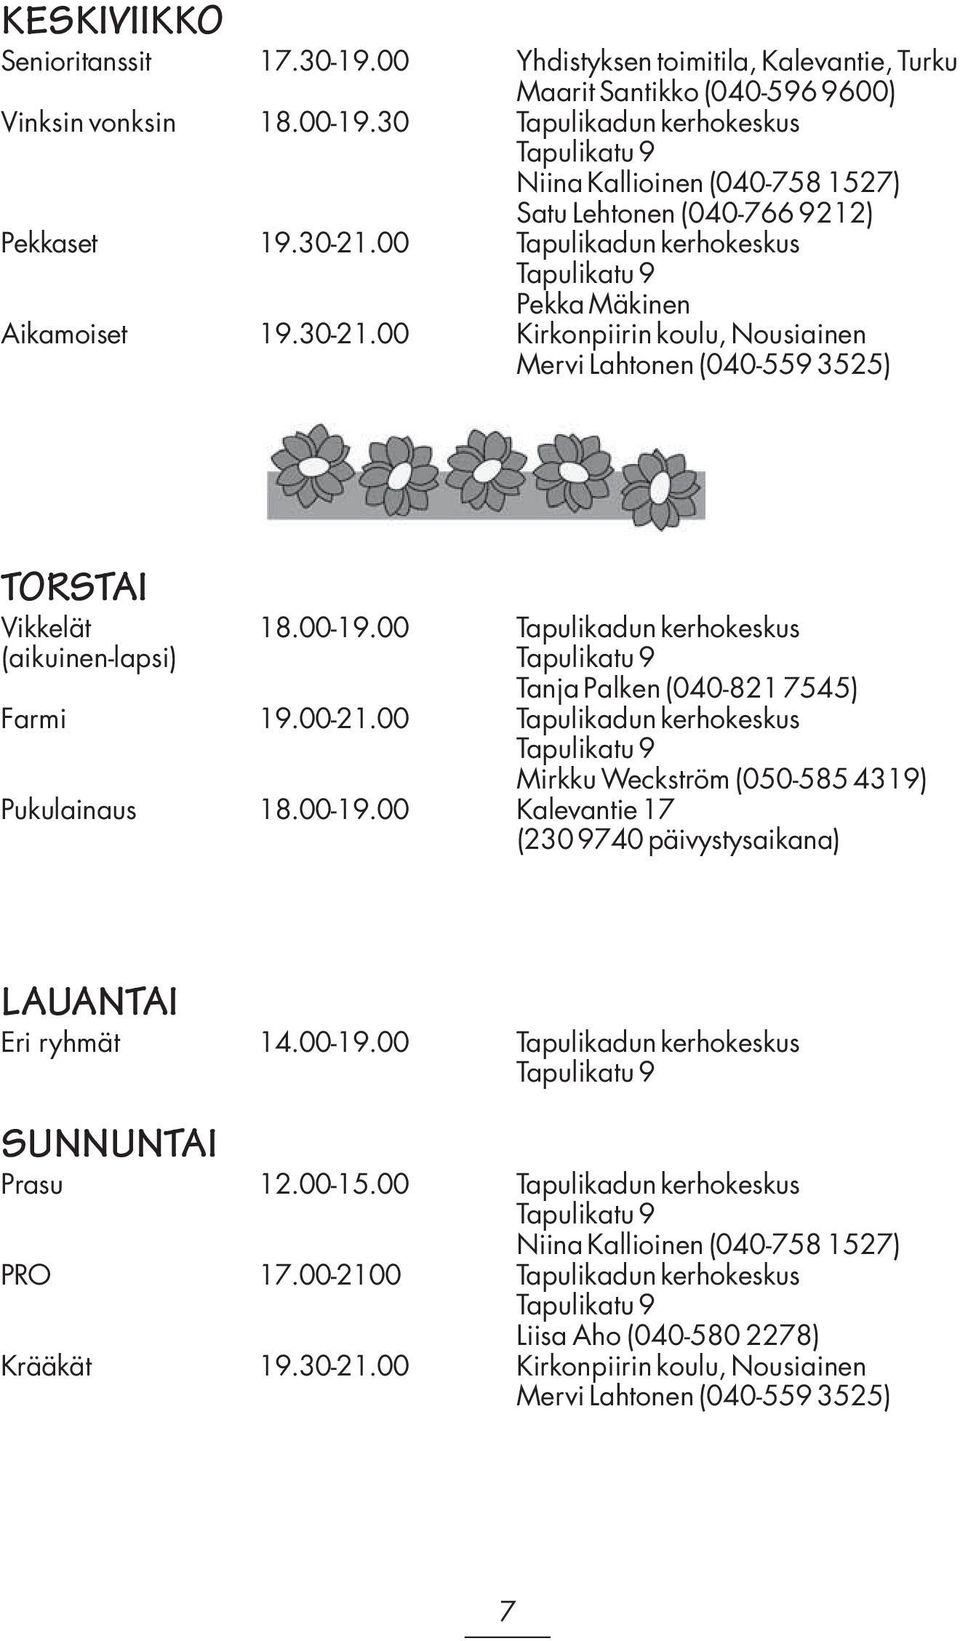 00 Tapulikadun kerhokeskus Tapulikatu 9 Pekka Mäkinen Aikamoiset 19.30-21.00 Kirkonpiirin koulu, Nousiainen Mervi Lahtonen (040-559 3525) TORSTAI Vikkelät 18.00-19.